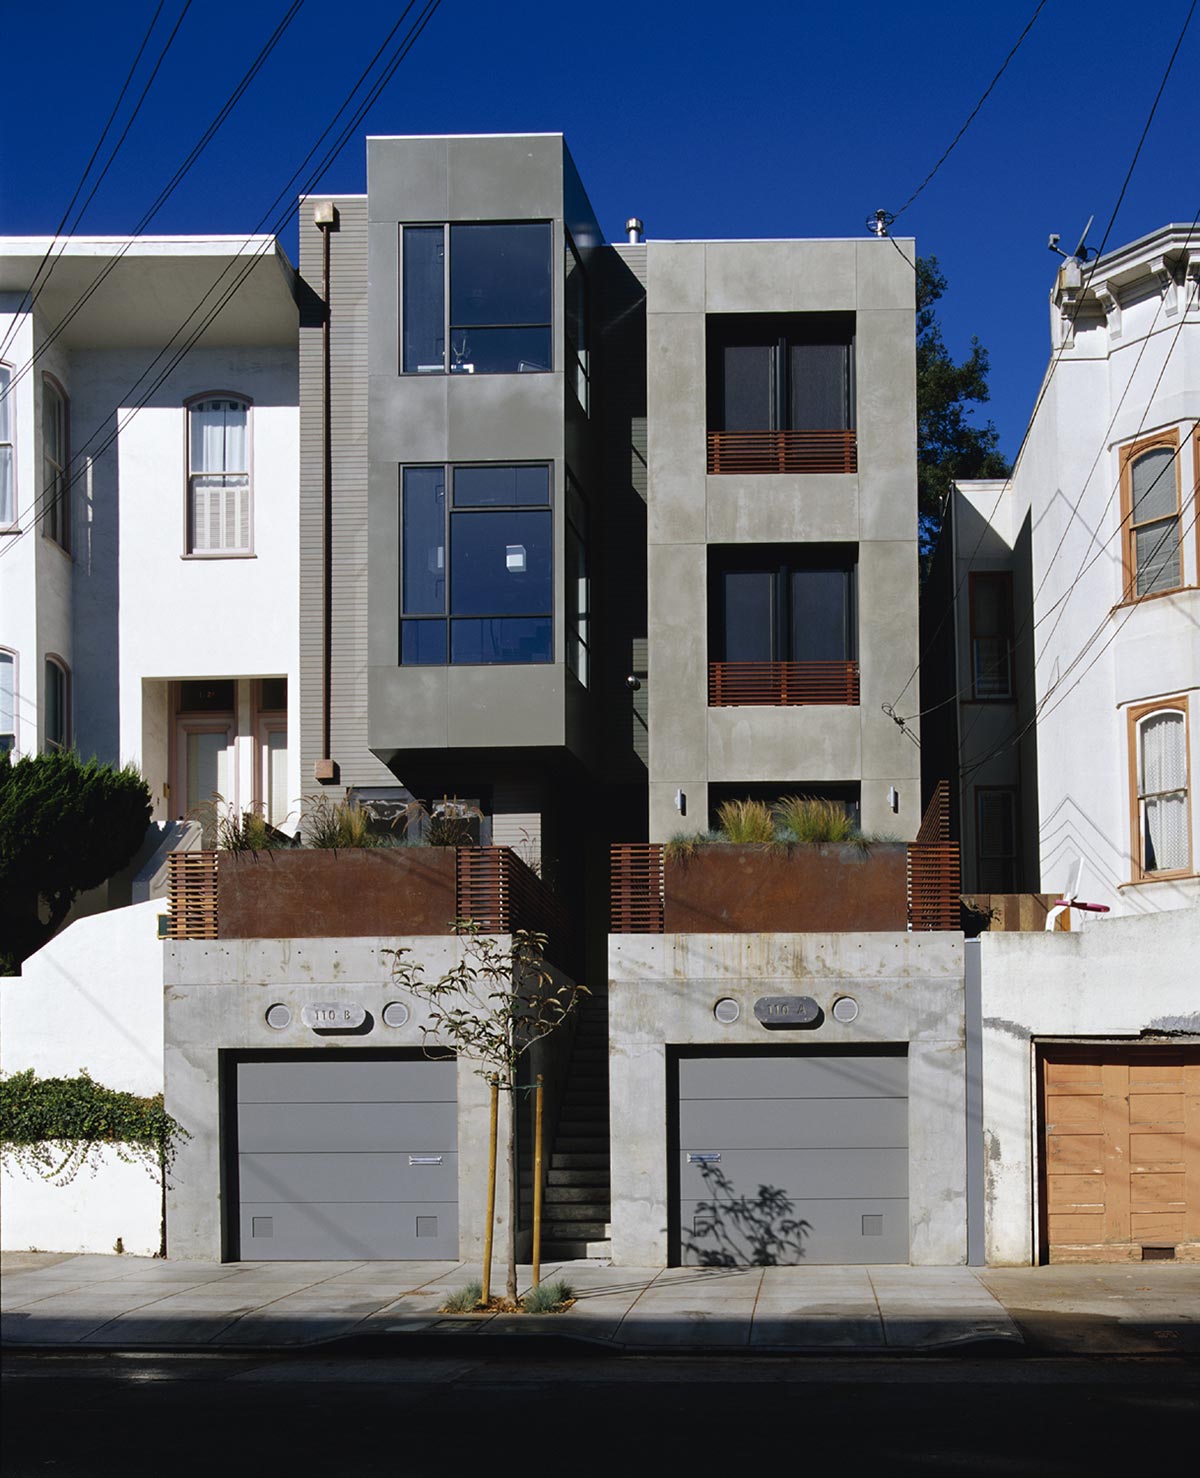 110 Chattanooga Street Duplex, San Francisco / Zack de Vito Architecture